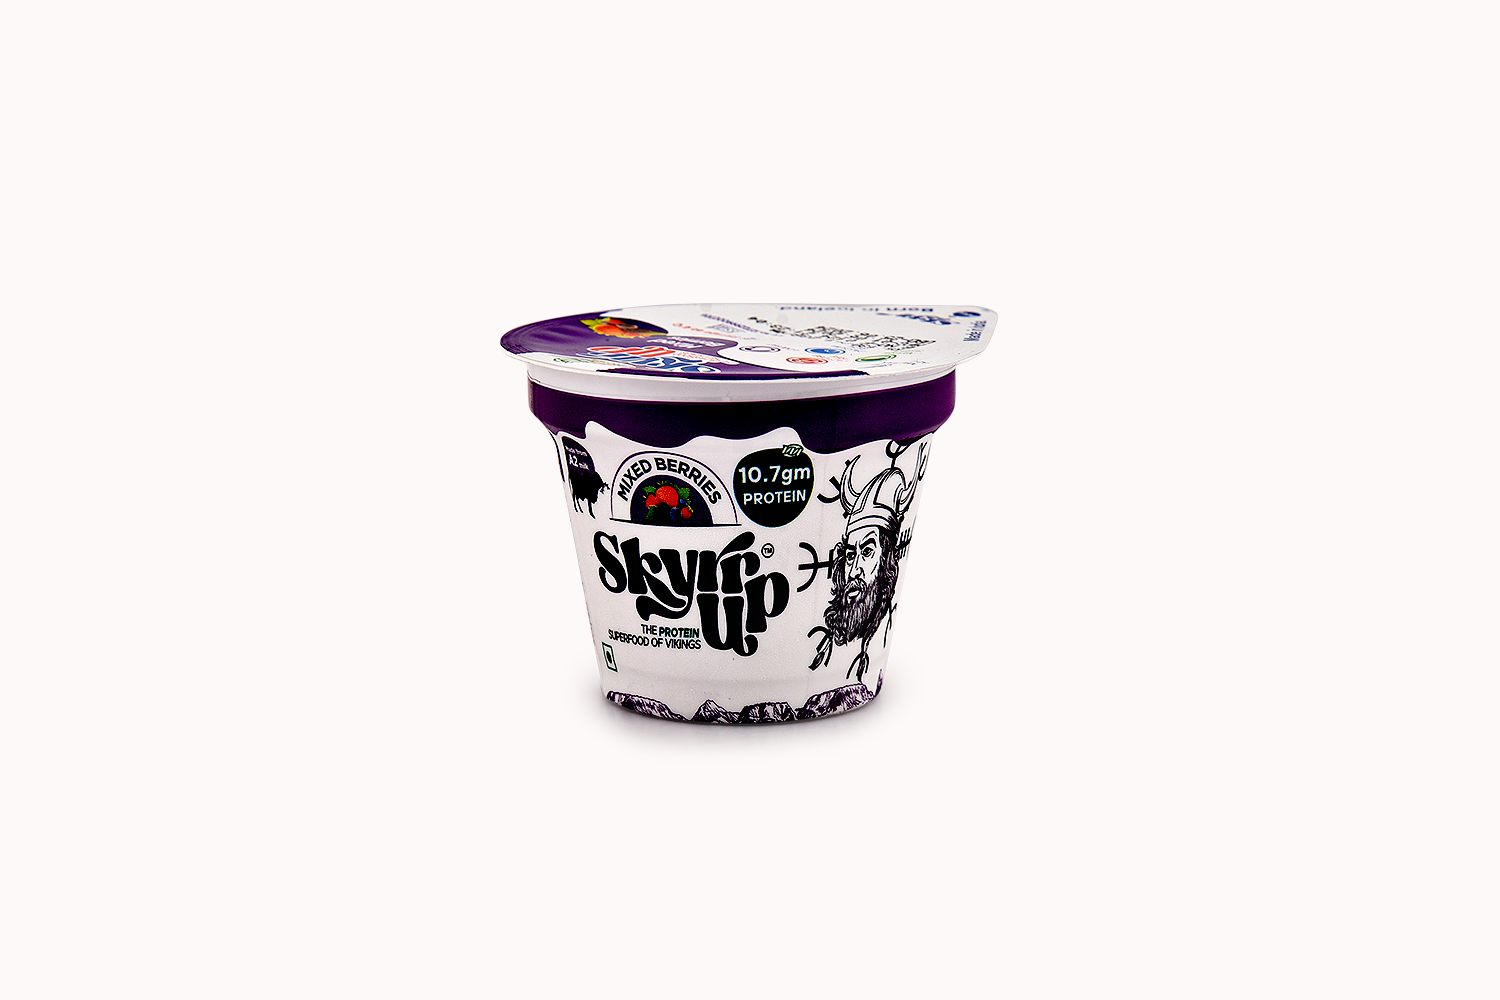 Skyrrup Mixed Berries Lactose-Free Greek Yoghurt